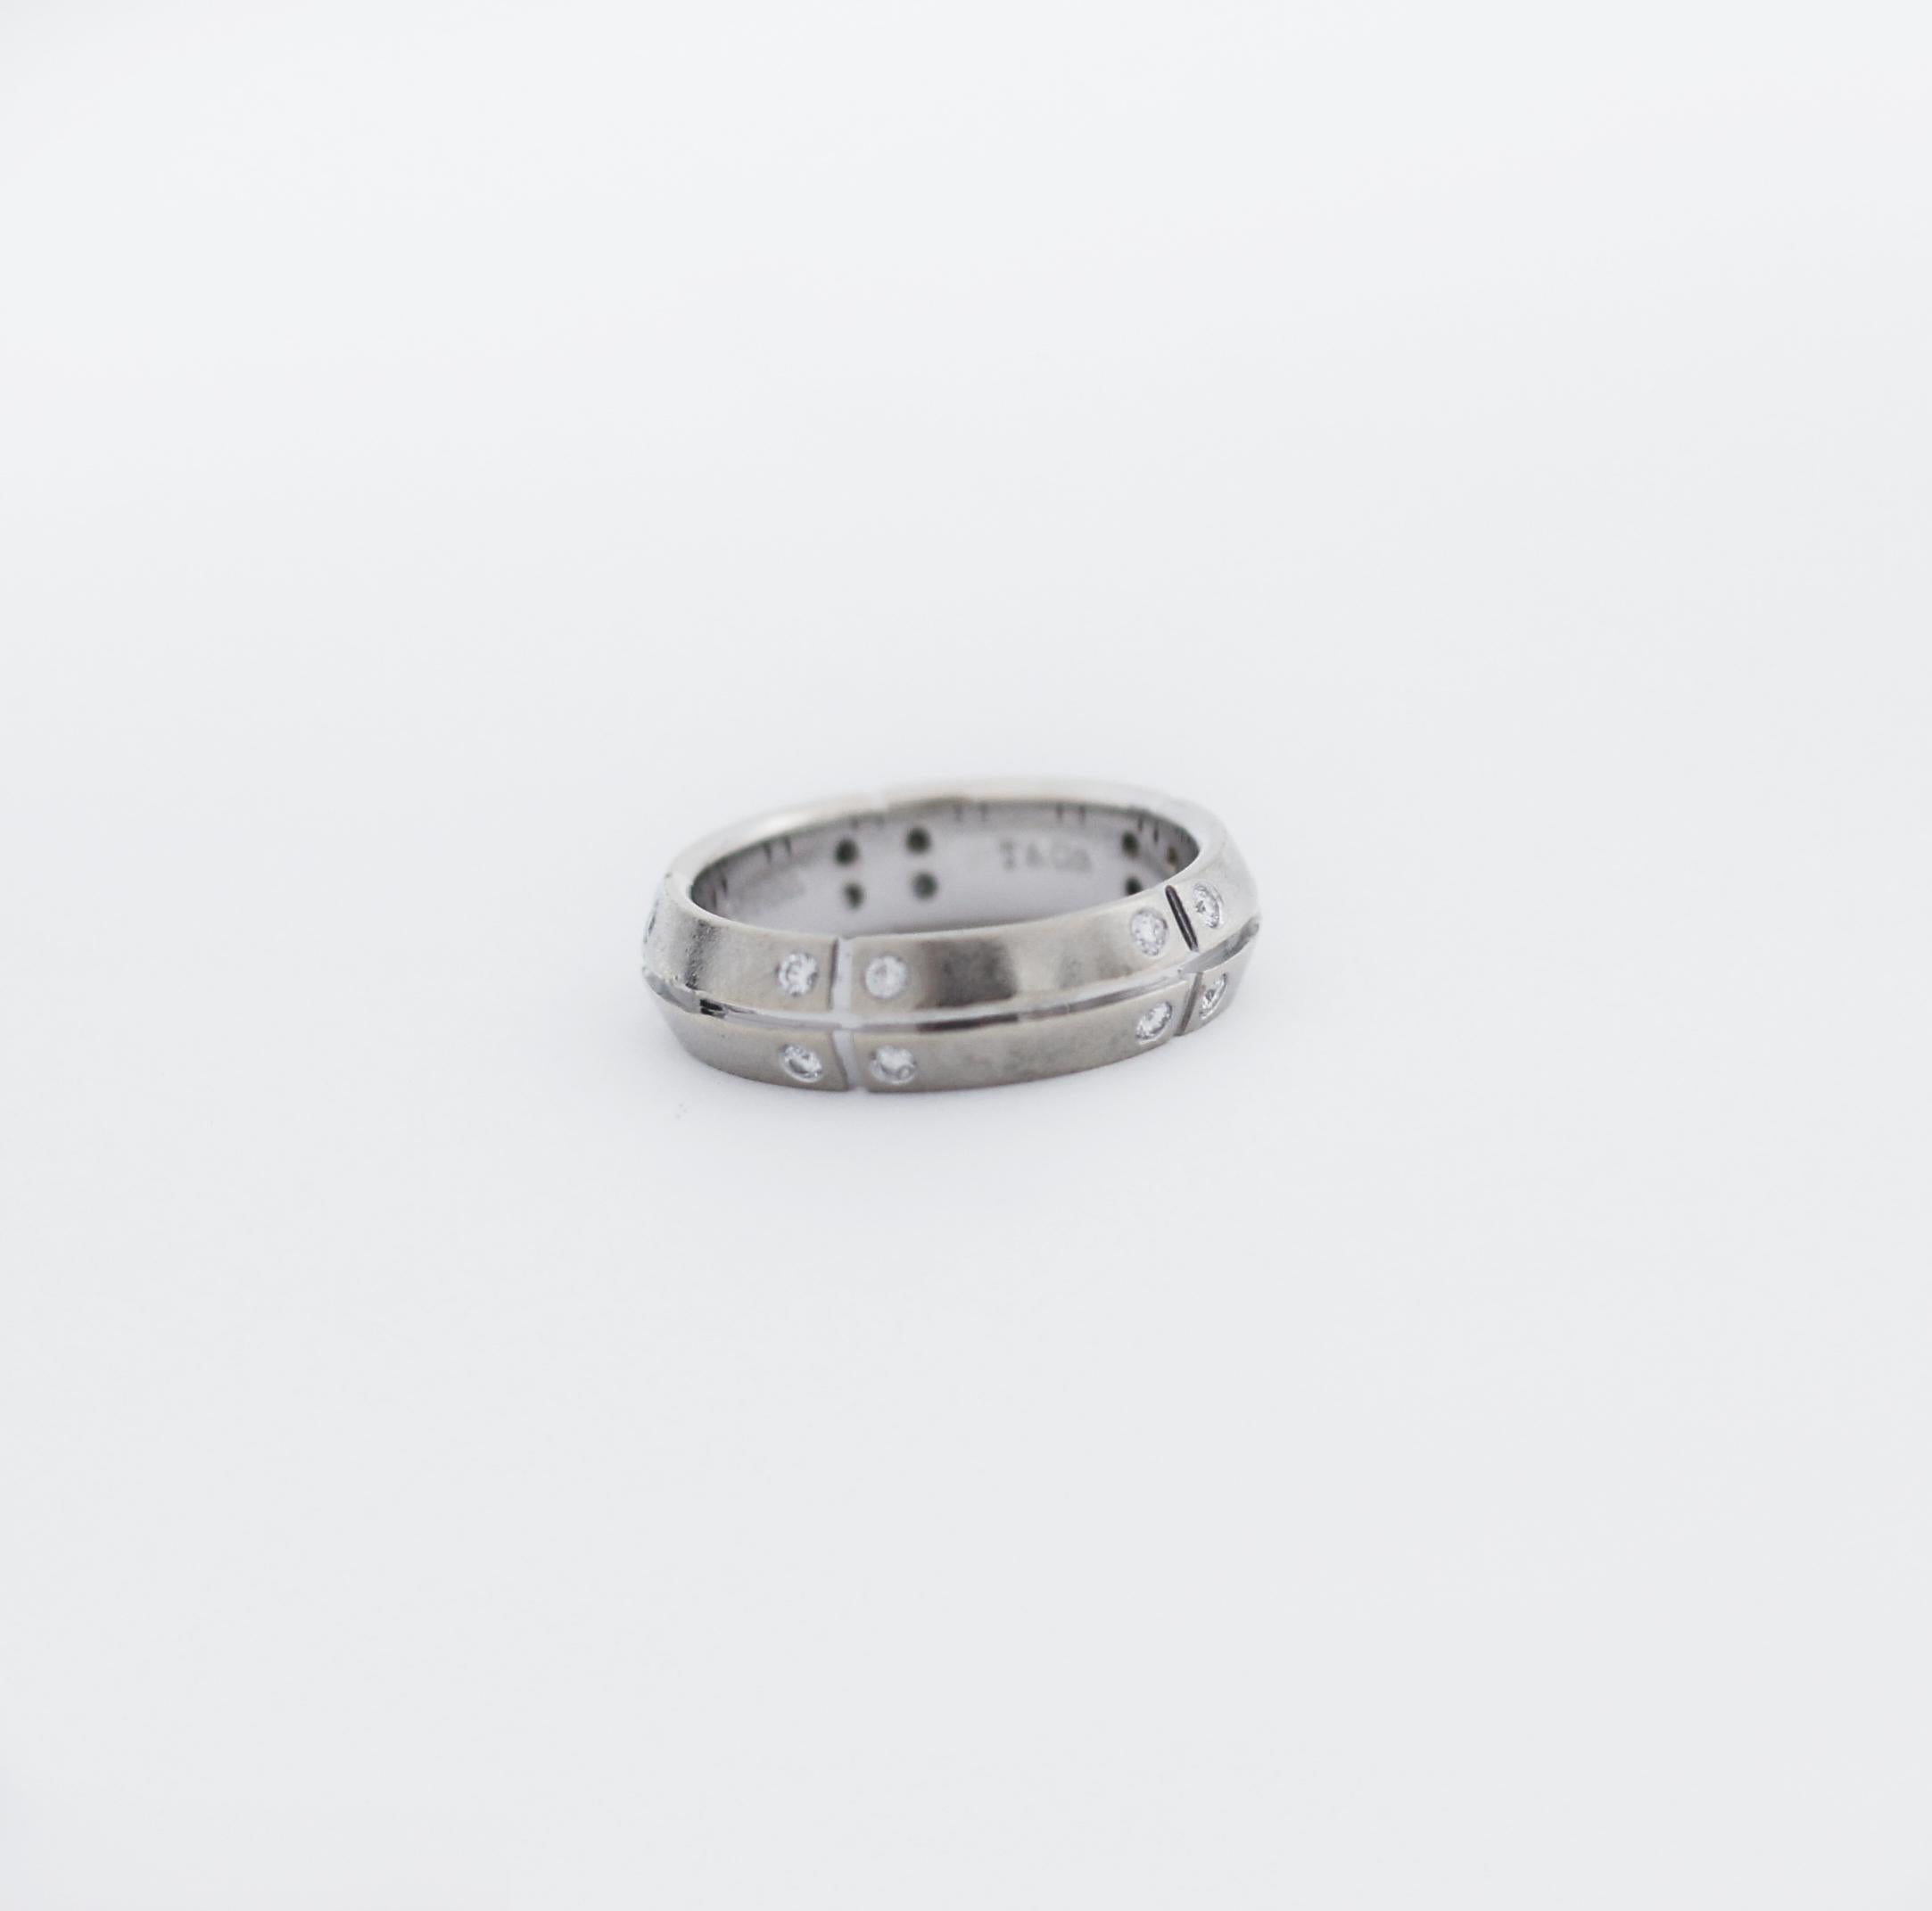 Tiffany & Co.
Vintage Streamerica Ring
Ring Größe 5.5 (US)
Ungefähr. Gewicht 5.5gr
Ringbreite 5mm
Ringlänge 20mm
Metall 18k Weißgold 750
Stil modern
20 kleine runde Diamanten im Brillantschliff
Gepunzt: T&Co 750 (c)2000
In großartig aussehendem